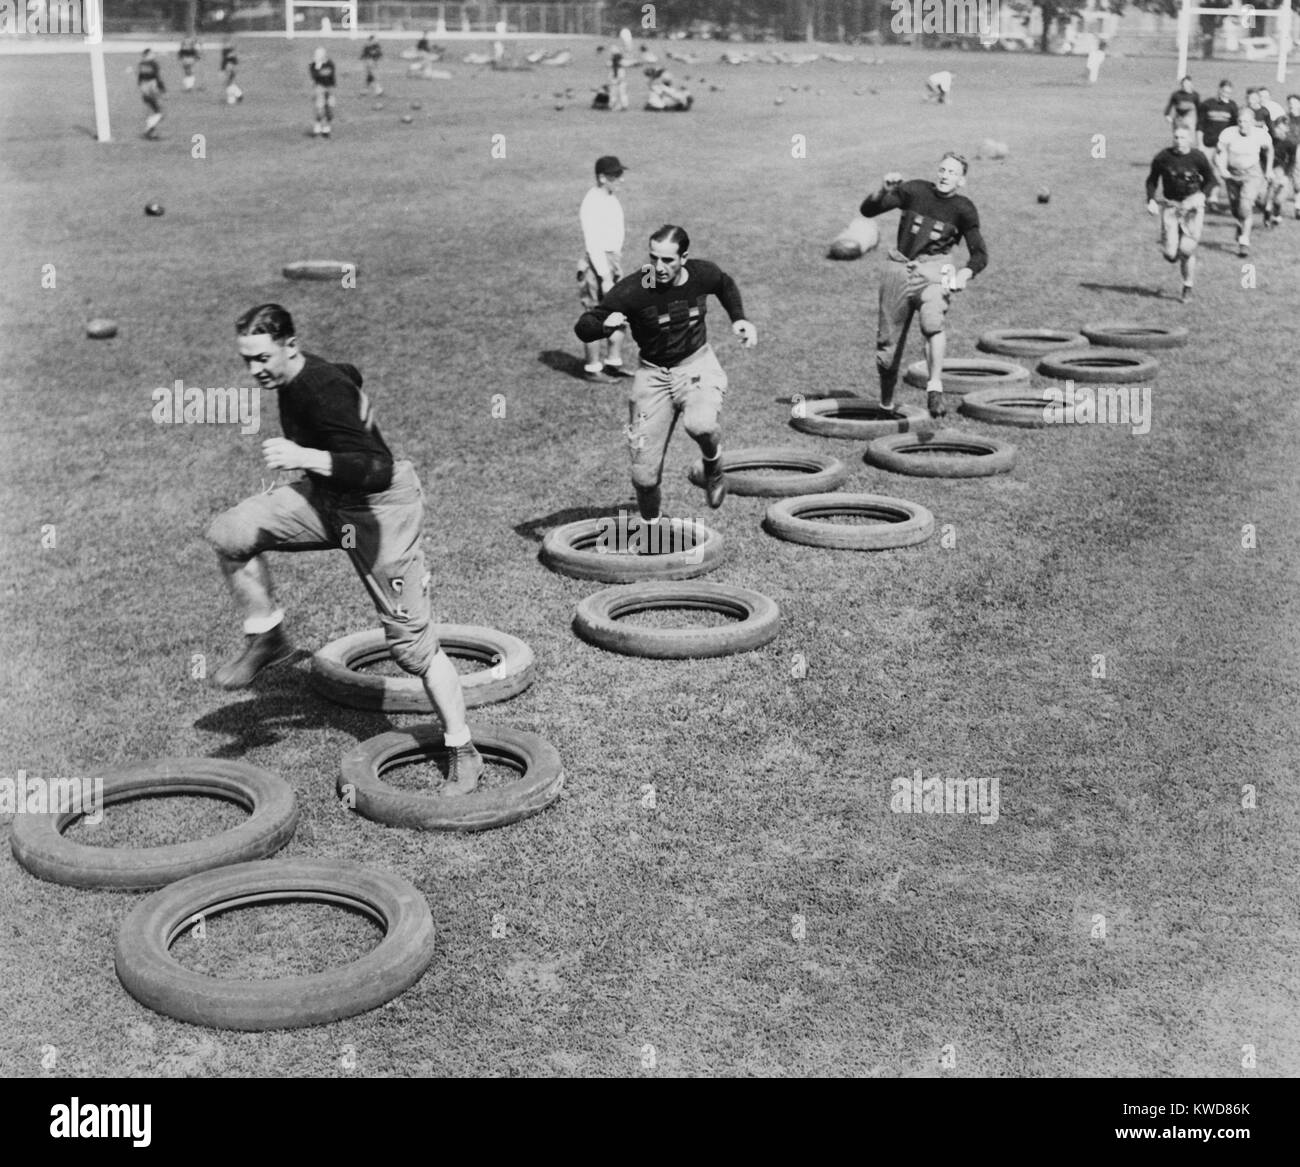 Fútbol de West Point squad alto paso a paso a través de un laberinto de neumáticos durante su primera práctica. 1920s. (BSLOC 2015 17 127) Foto de stock